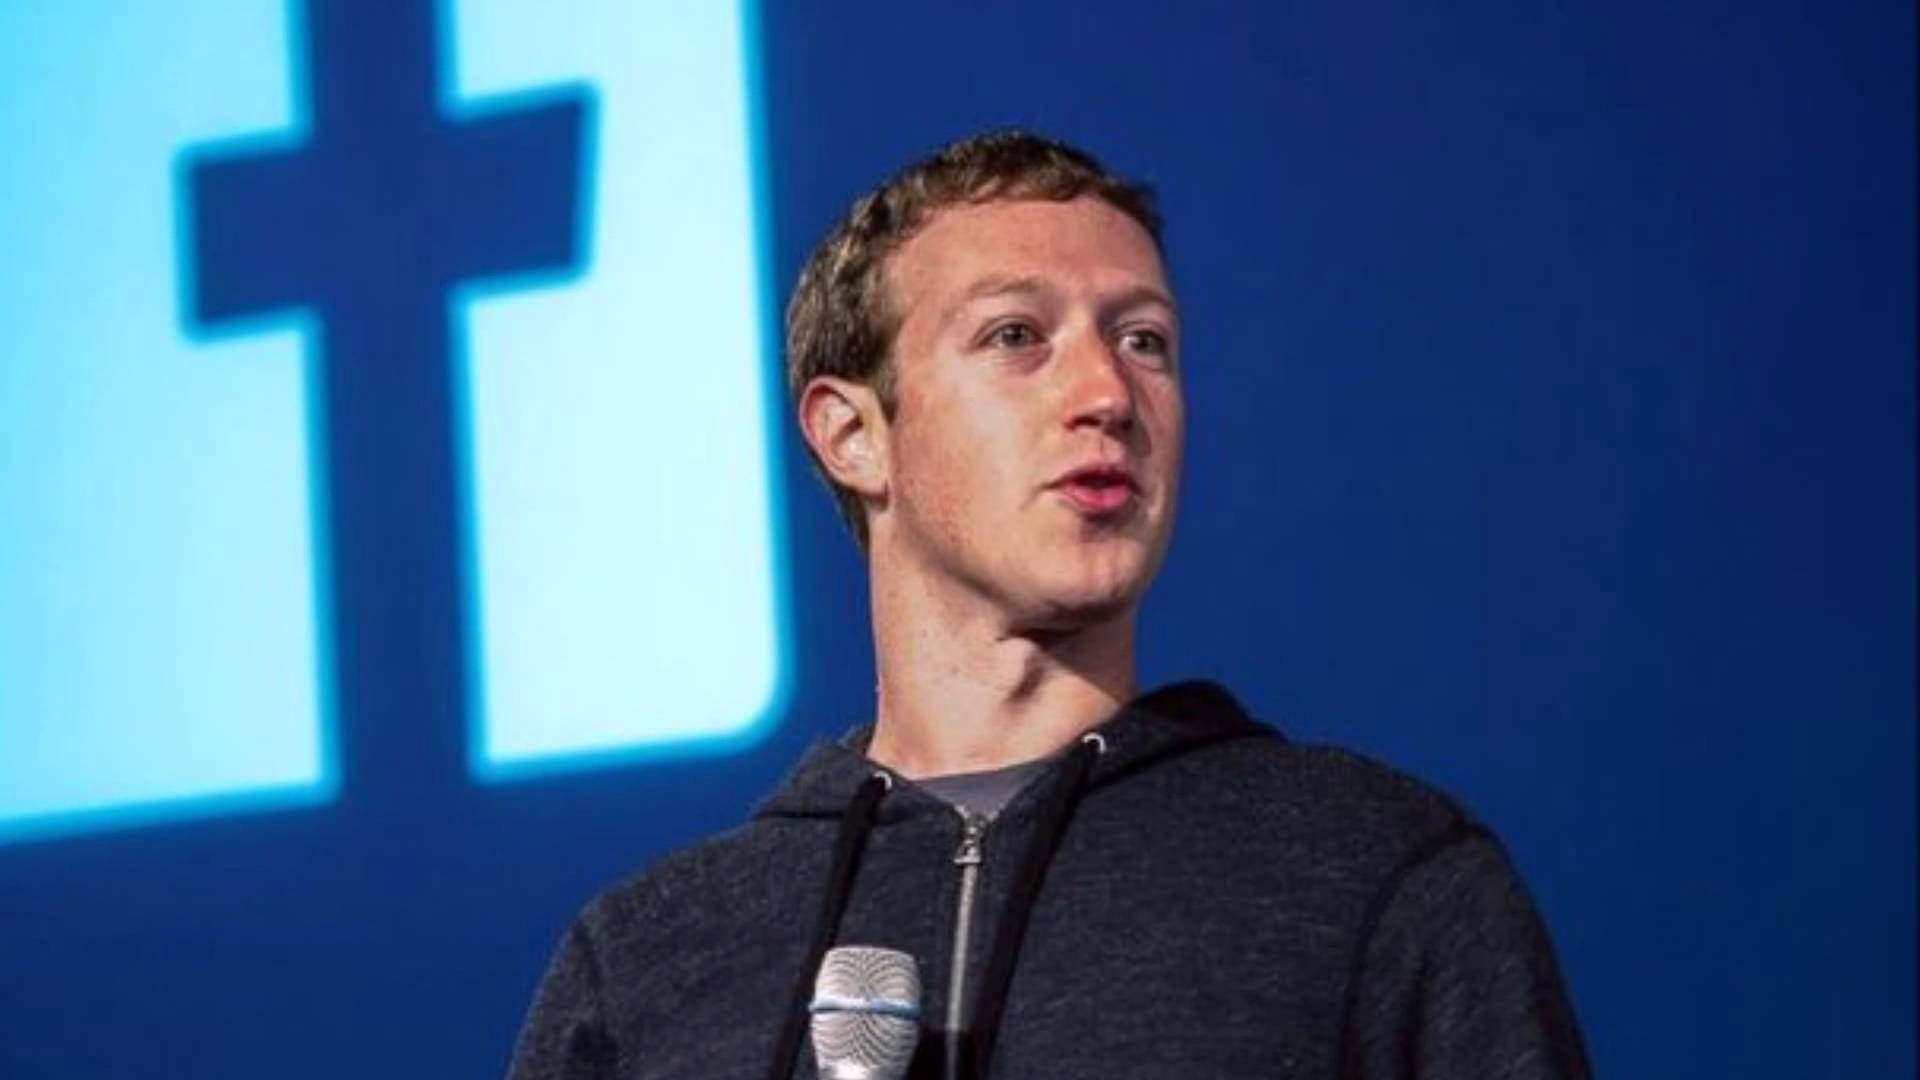 ЗМІ поширюють фейкову новину про платний доступ до Facebook